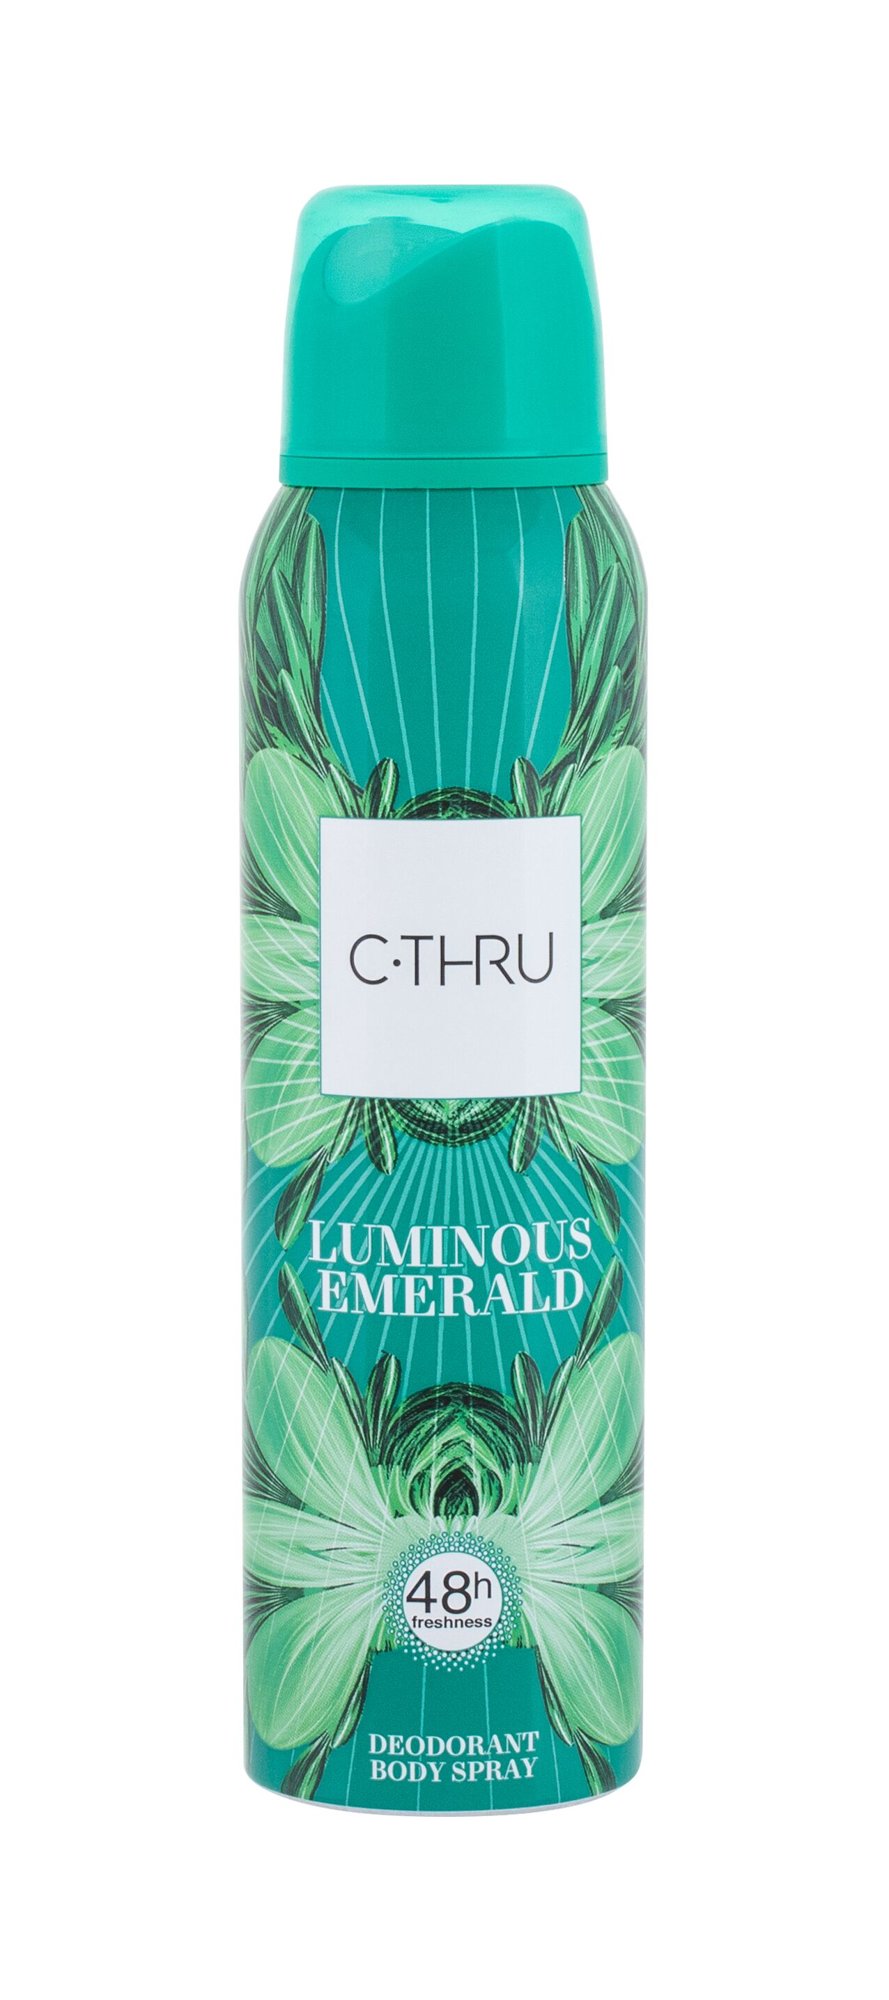 C-THRU Luminous Emerald 150ml dezodorantas